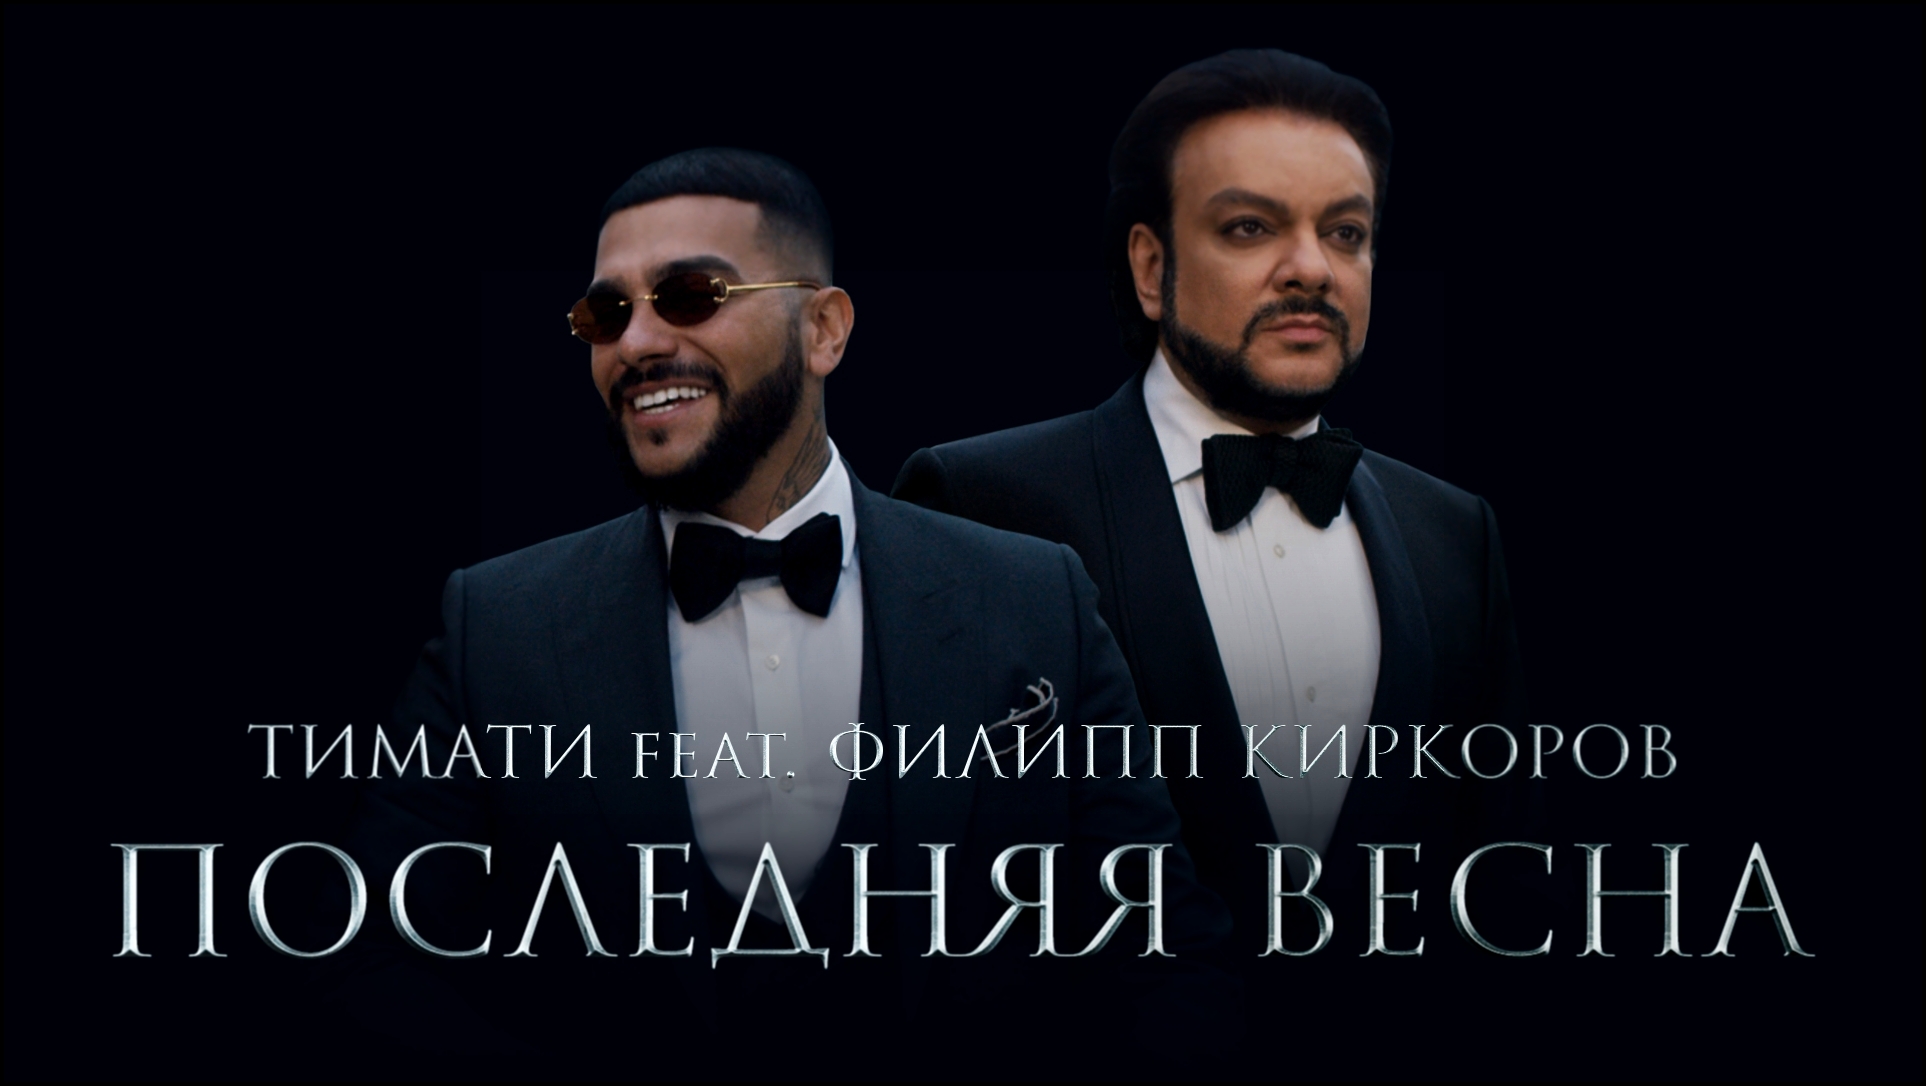 Тимати feat. Филипп Киркоров - Последняя весна (премьера клипа, 2017)  - видеоклип на песню